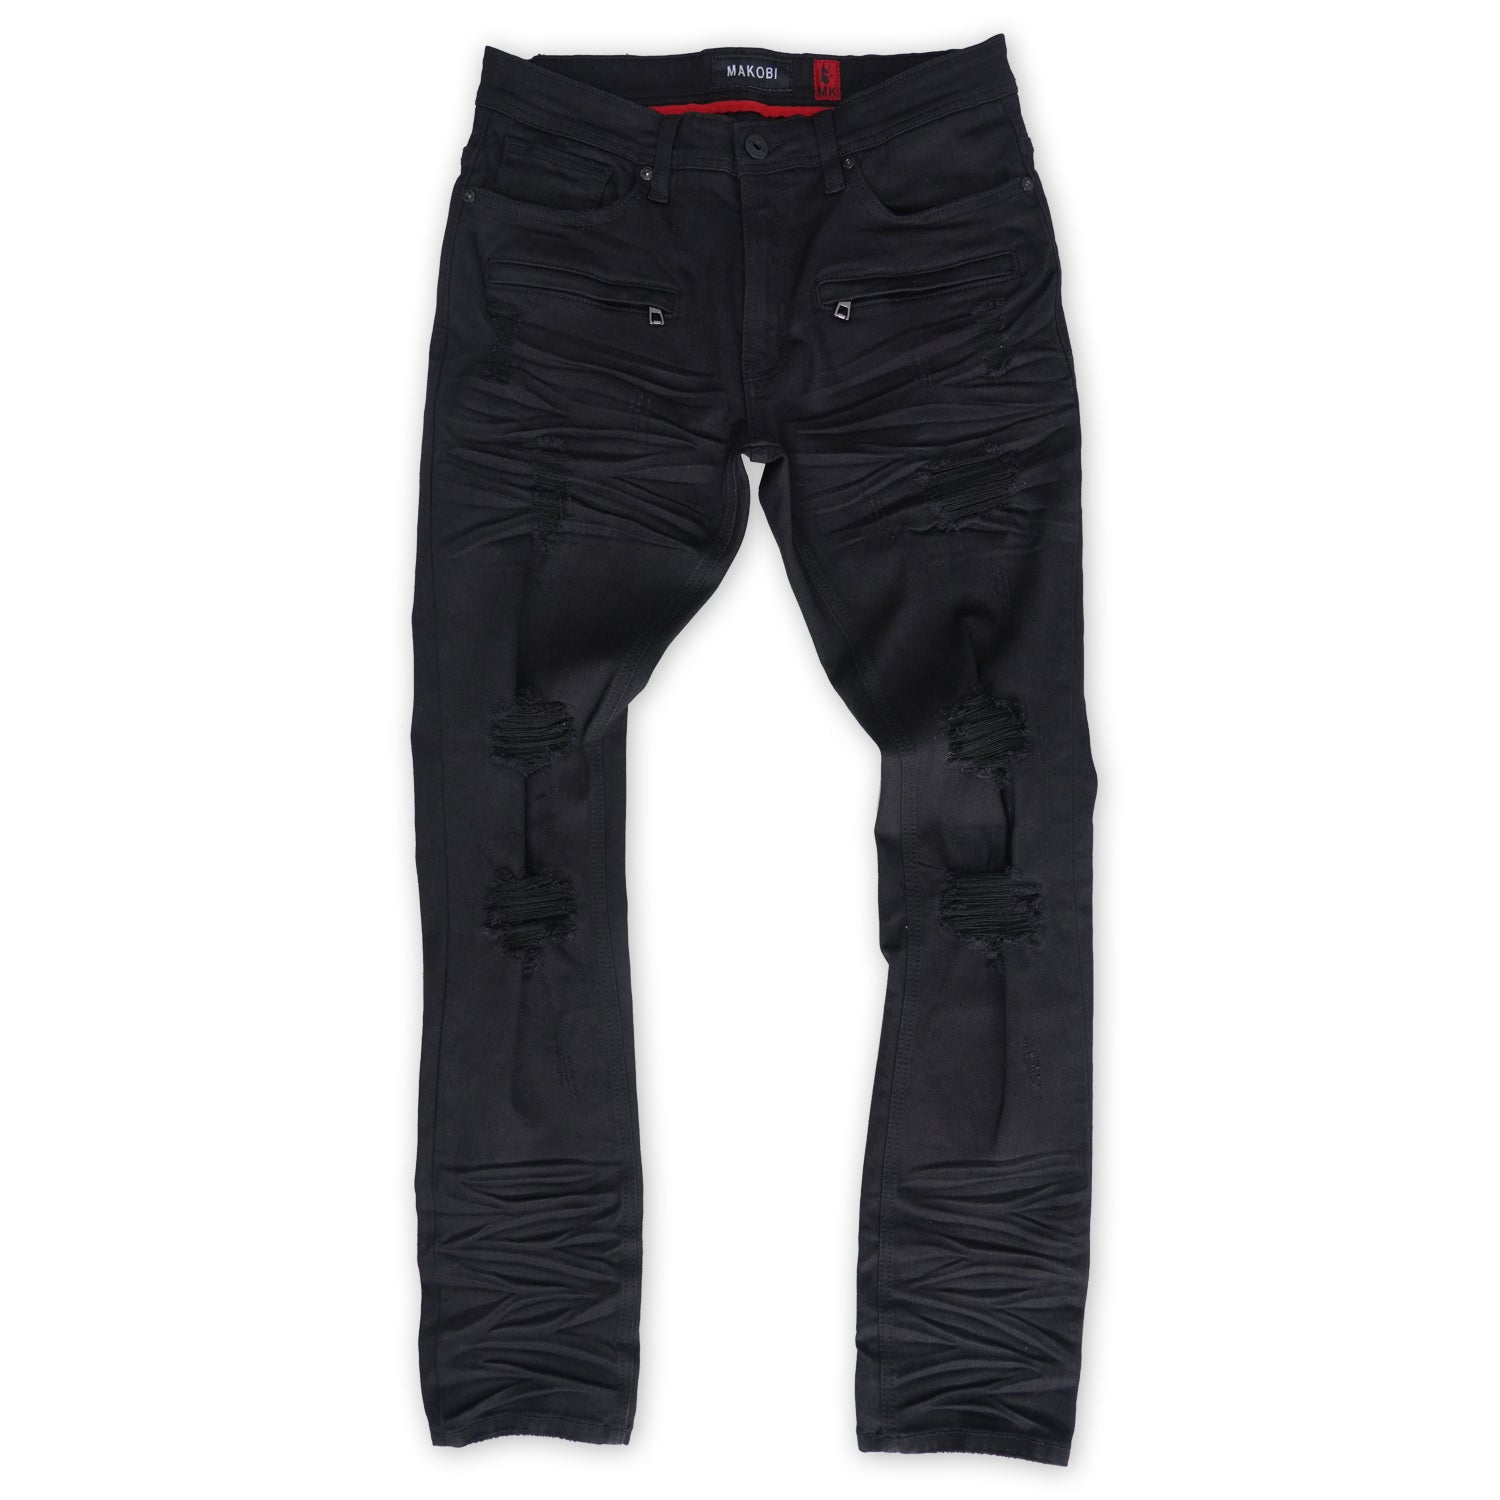 M1925 Rochester Coded Shredded Jeans - Black/Black